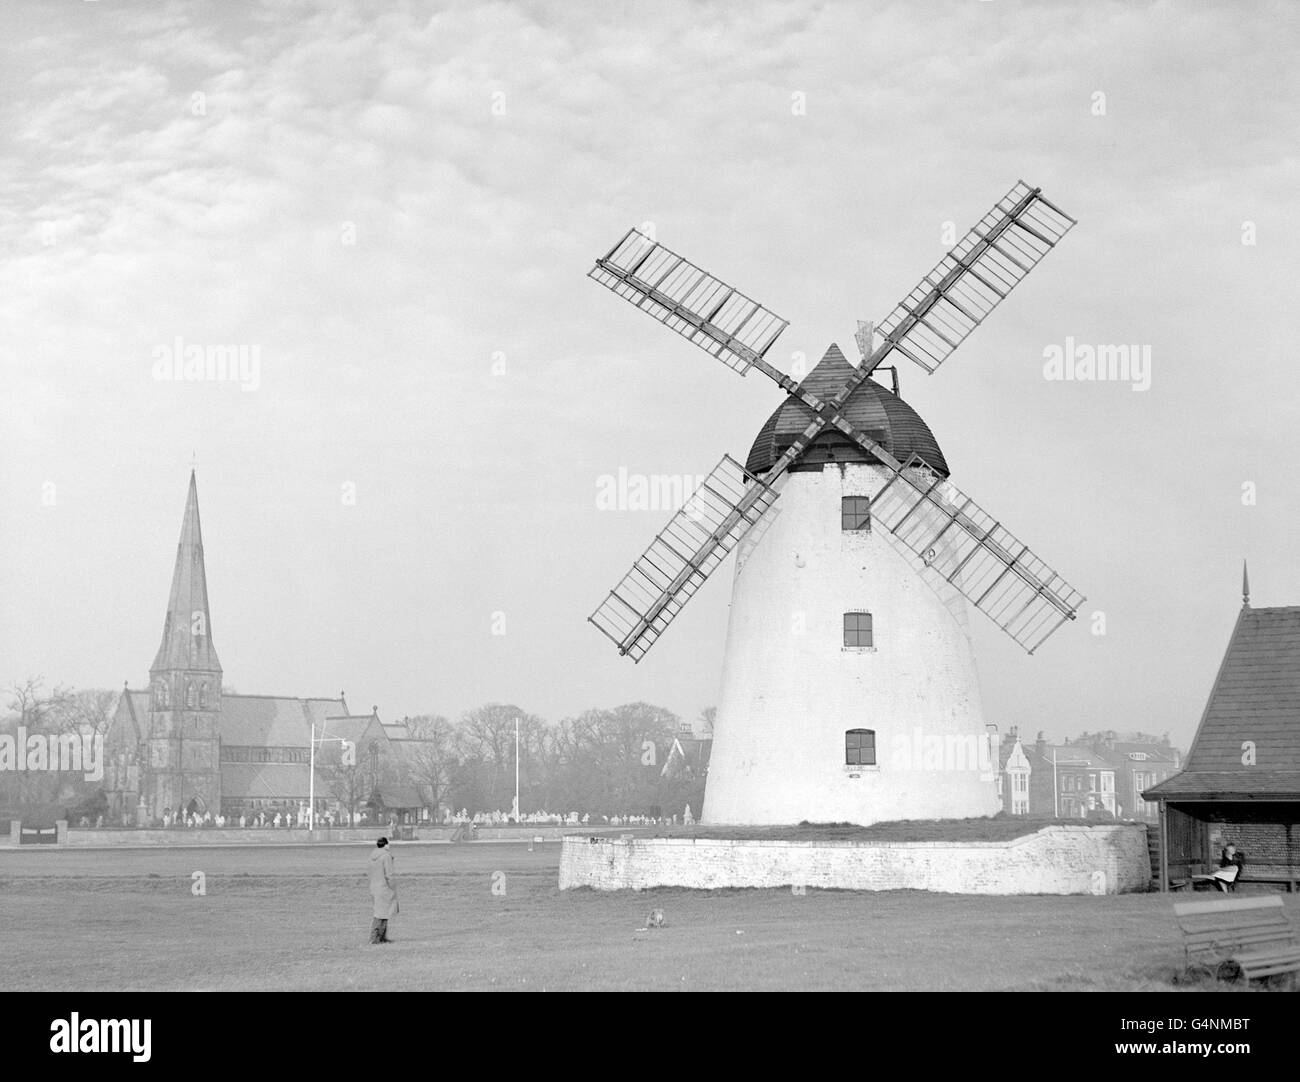 Lancashire gilt als die älteste Windmühle in Großbritannien, das „Green“ in Lytham, und besitzt seit 1180 eines dieser malerischen Wahrzeichen. Es wird jetzt als neuartiges Unterwerk für Elektrizität verwendet. Stockfoto